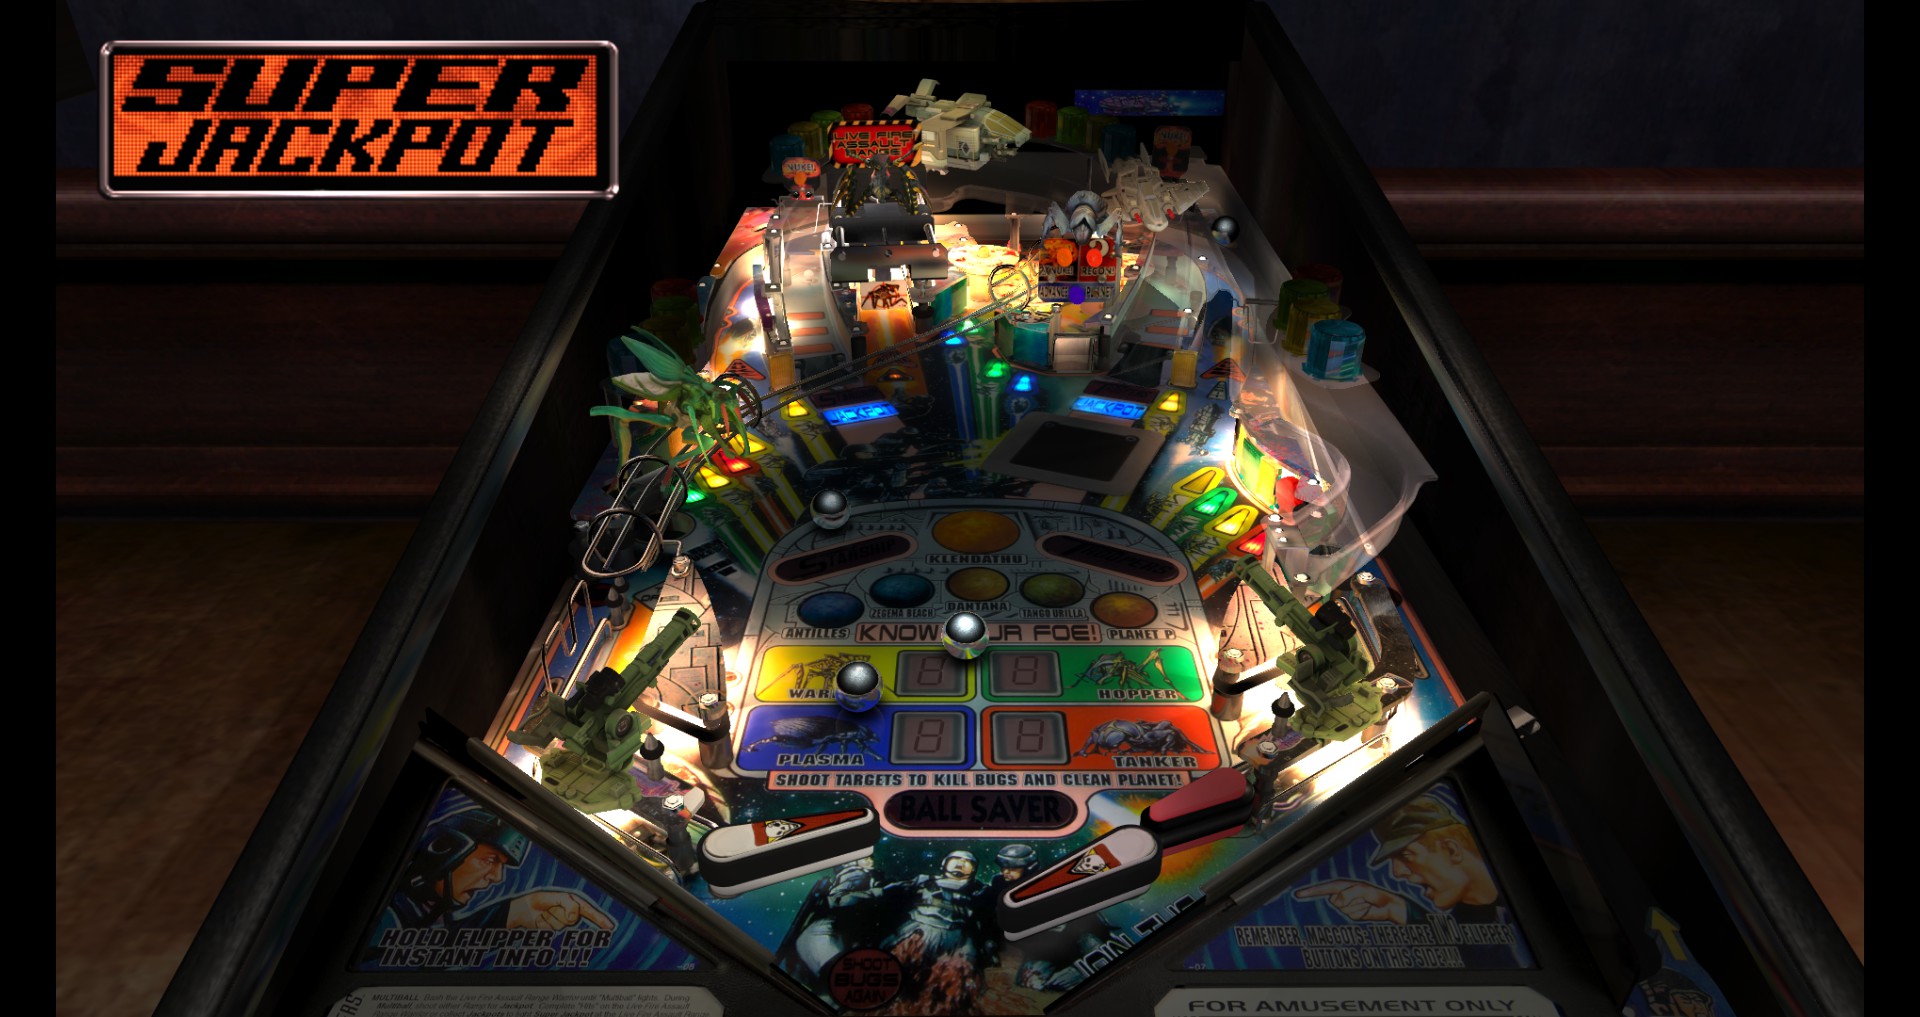 Pinball Arcade: Stern Pack 1 Featured Screenshot #1